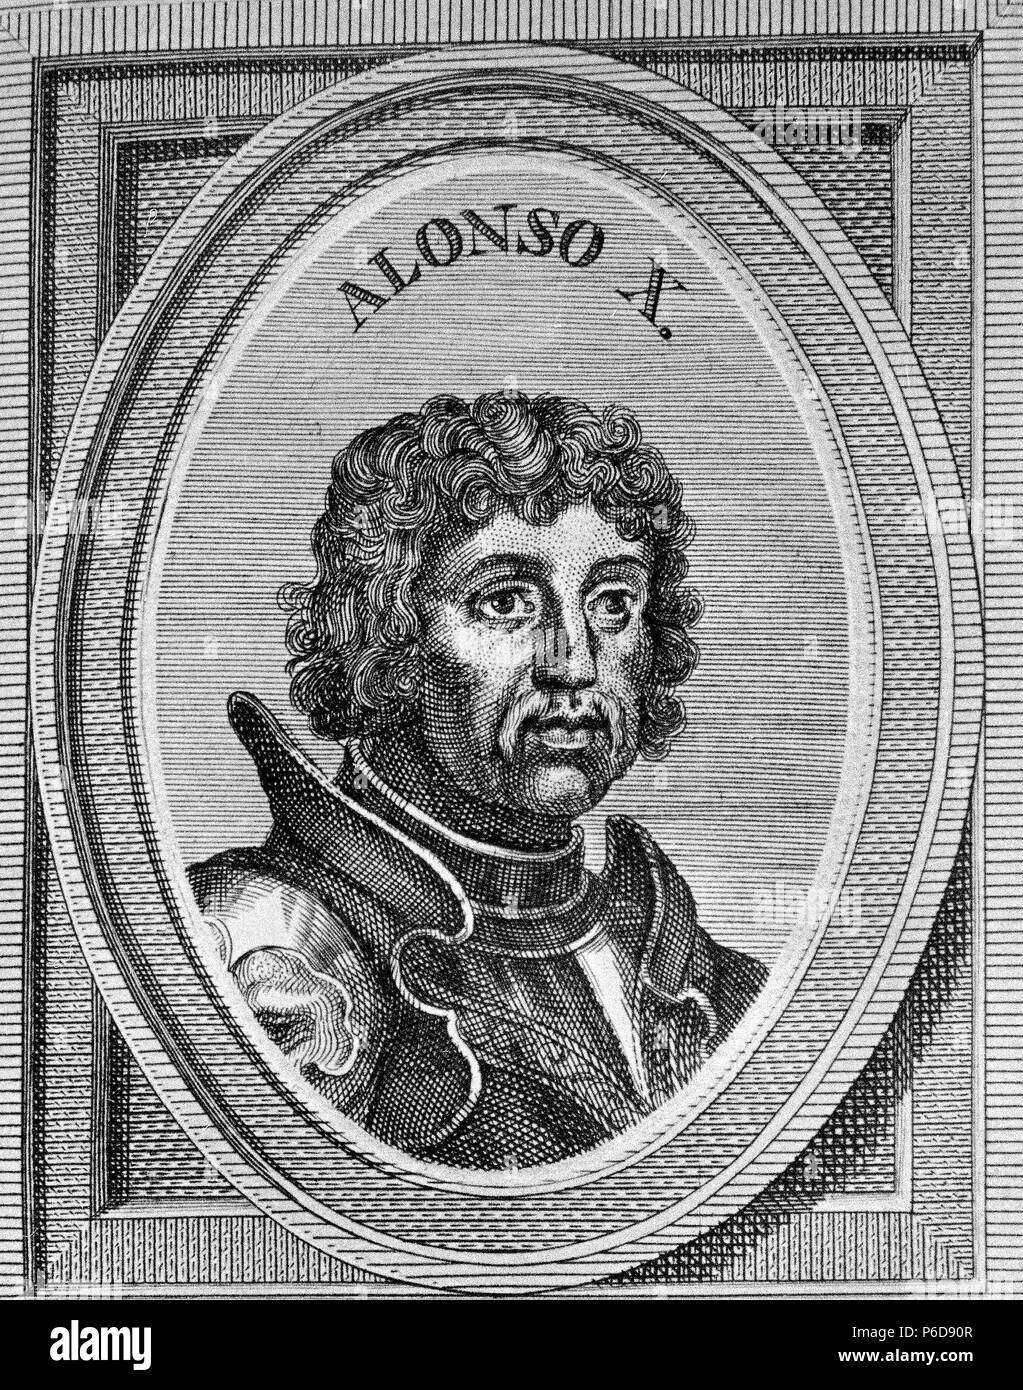 ALFONSO X el Sabio". REY DE CASTILLA Y LEON. TOLEDO 1221 - 1284. GRABADO RETRATO DE ARNOLDO VANWESTER, 1684. BIBLIOTECA NACIONAL. MADRID. Stockfoto